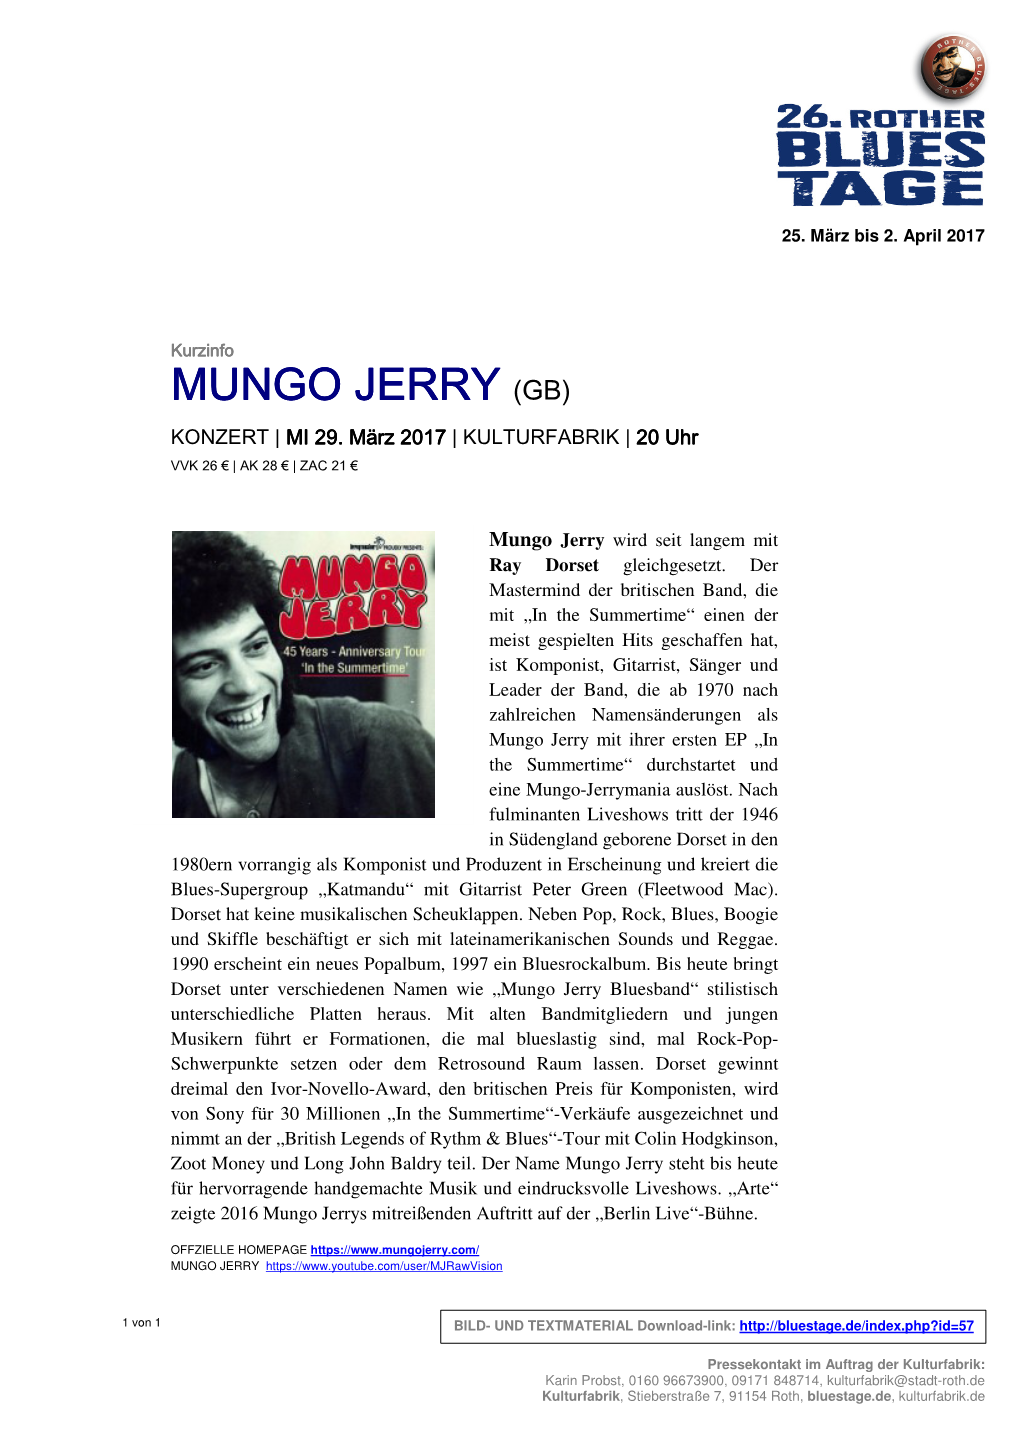 Mungo Jerry Mungo Jerry (Gb)